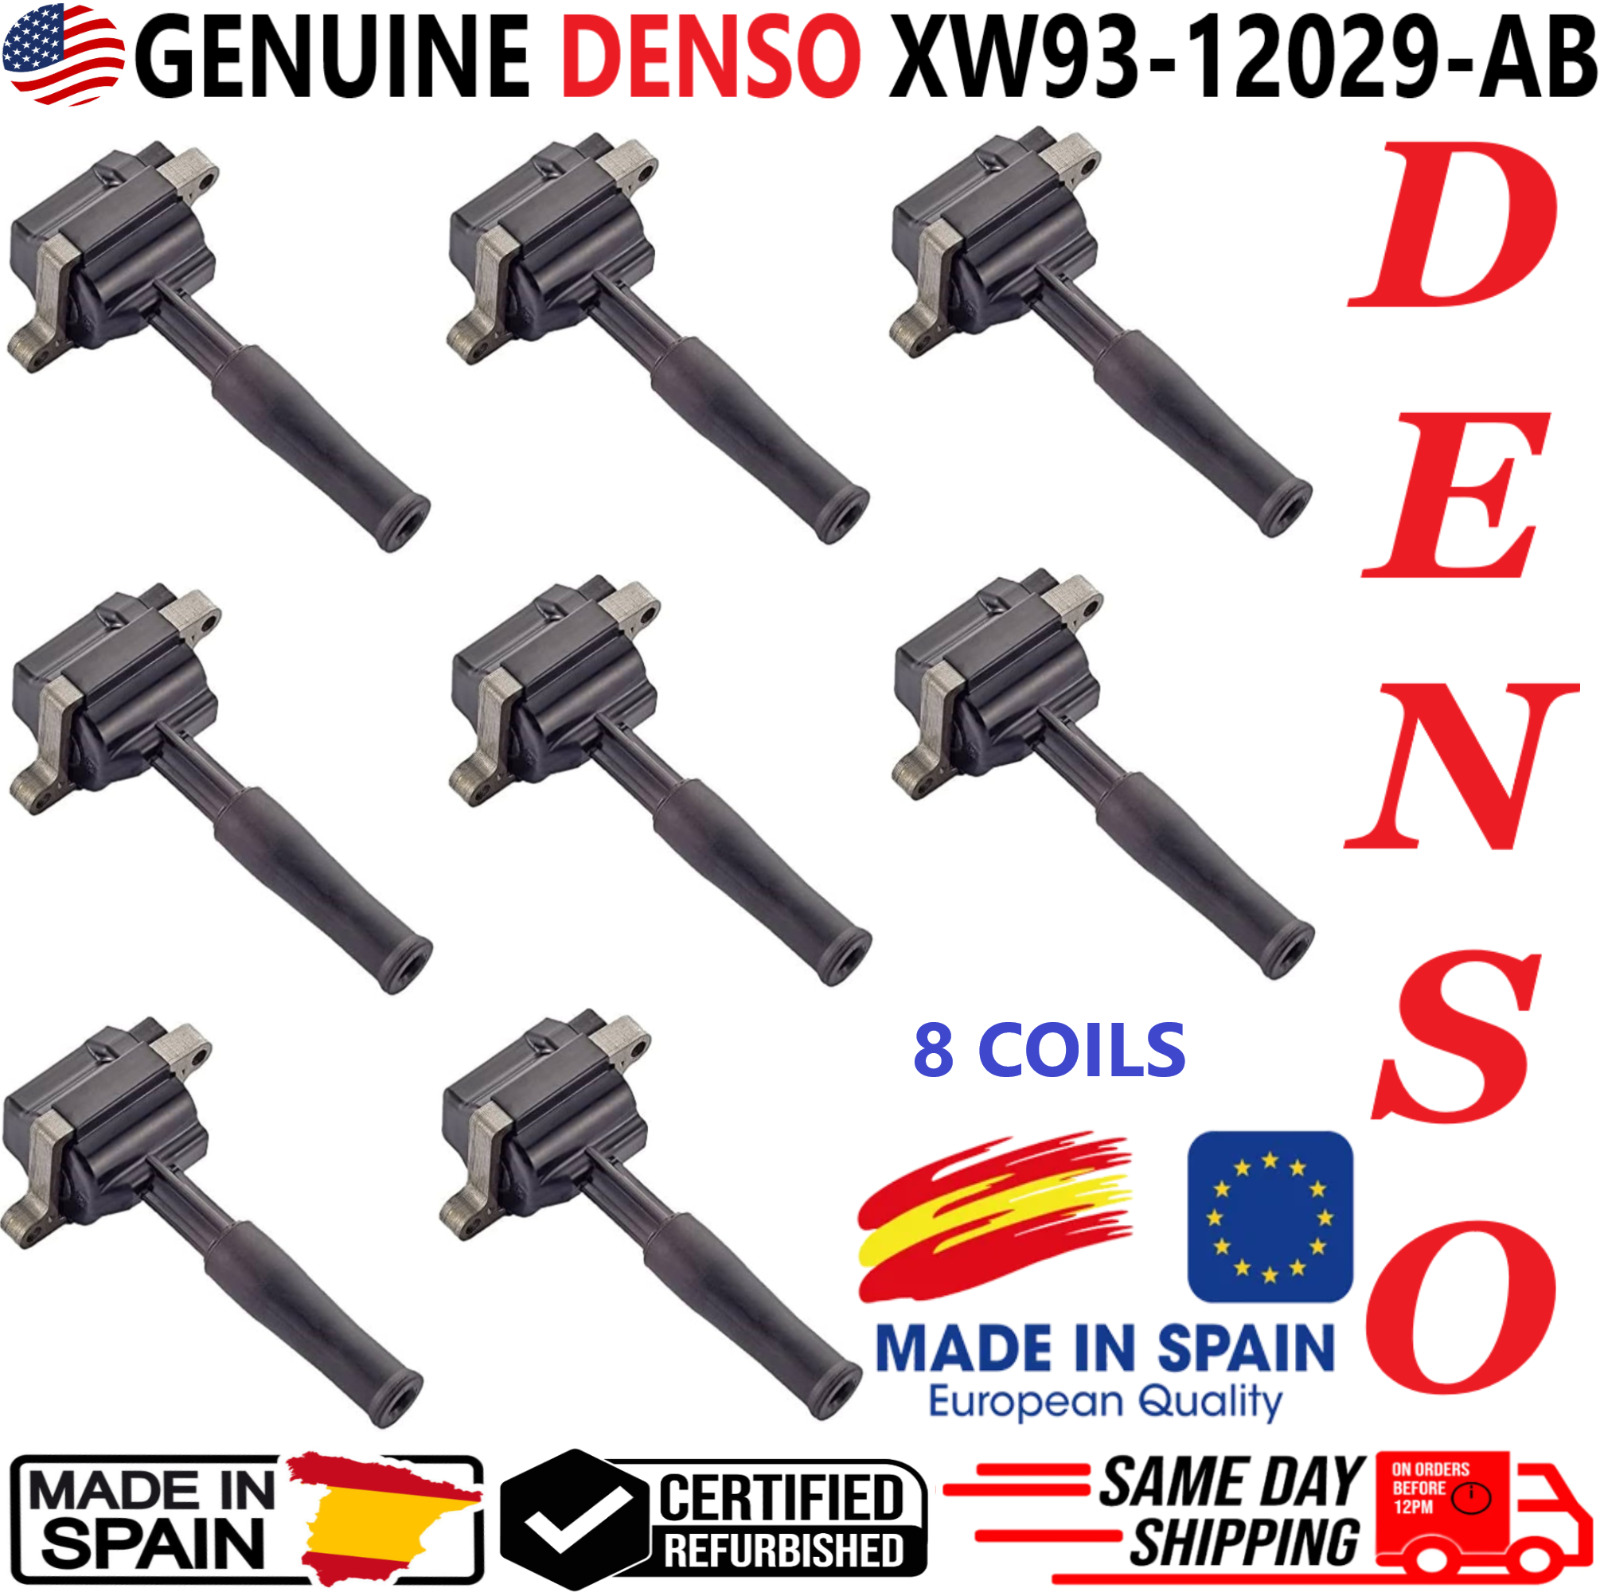 GENUINE DENSO Set of 8 Ignition Coils For 1999-2003 Jaguar 4.0L V8 XW93-12029-AB